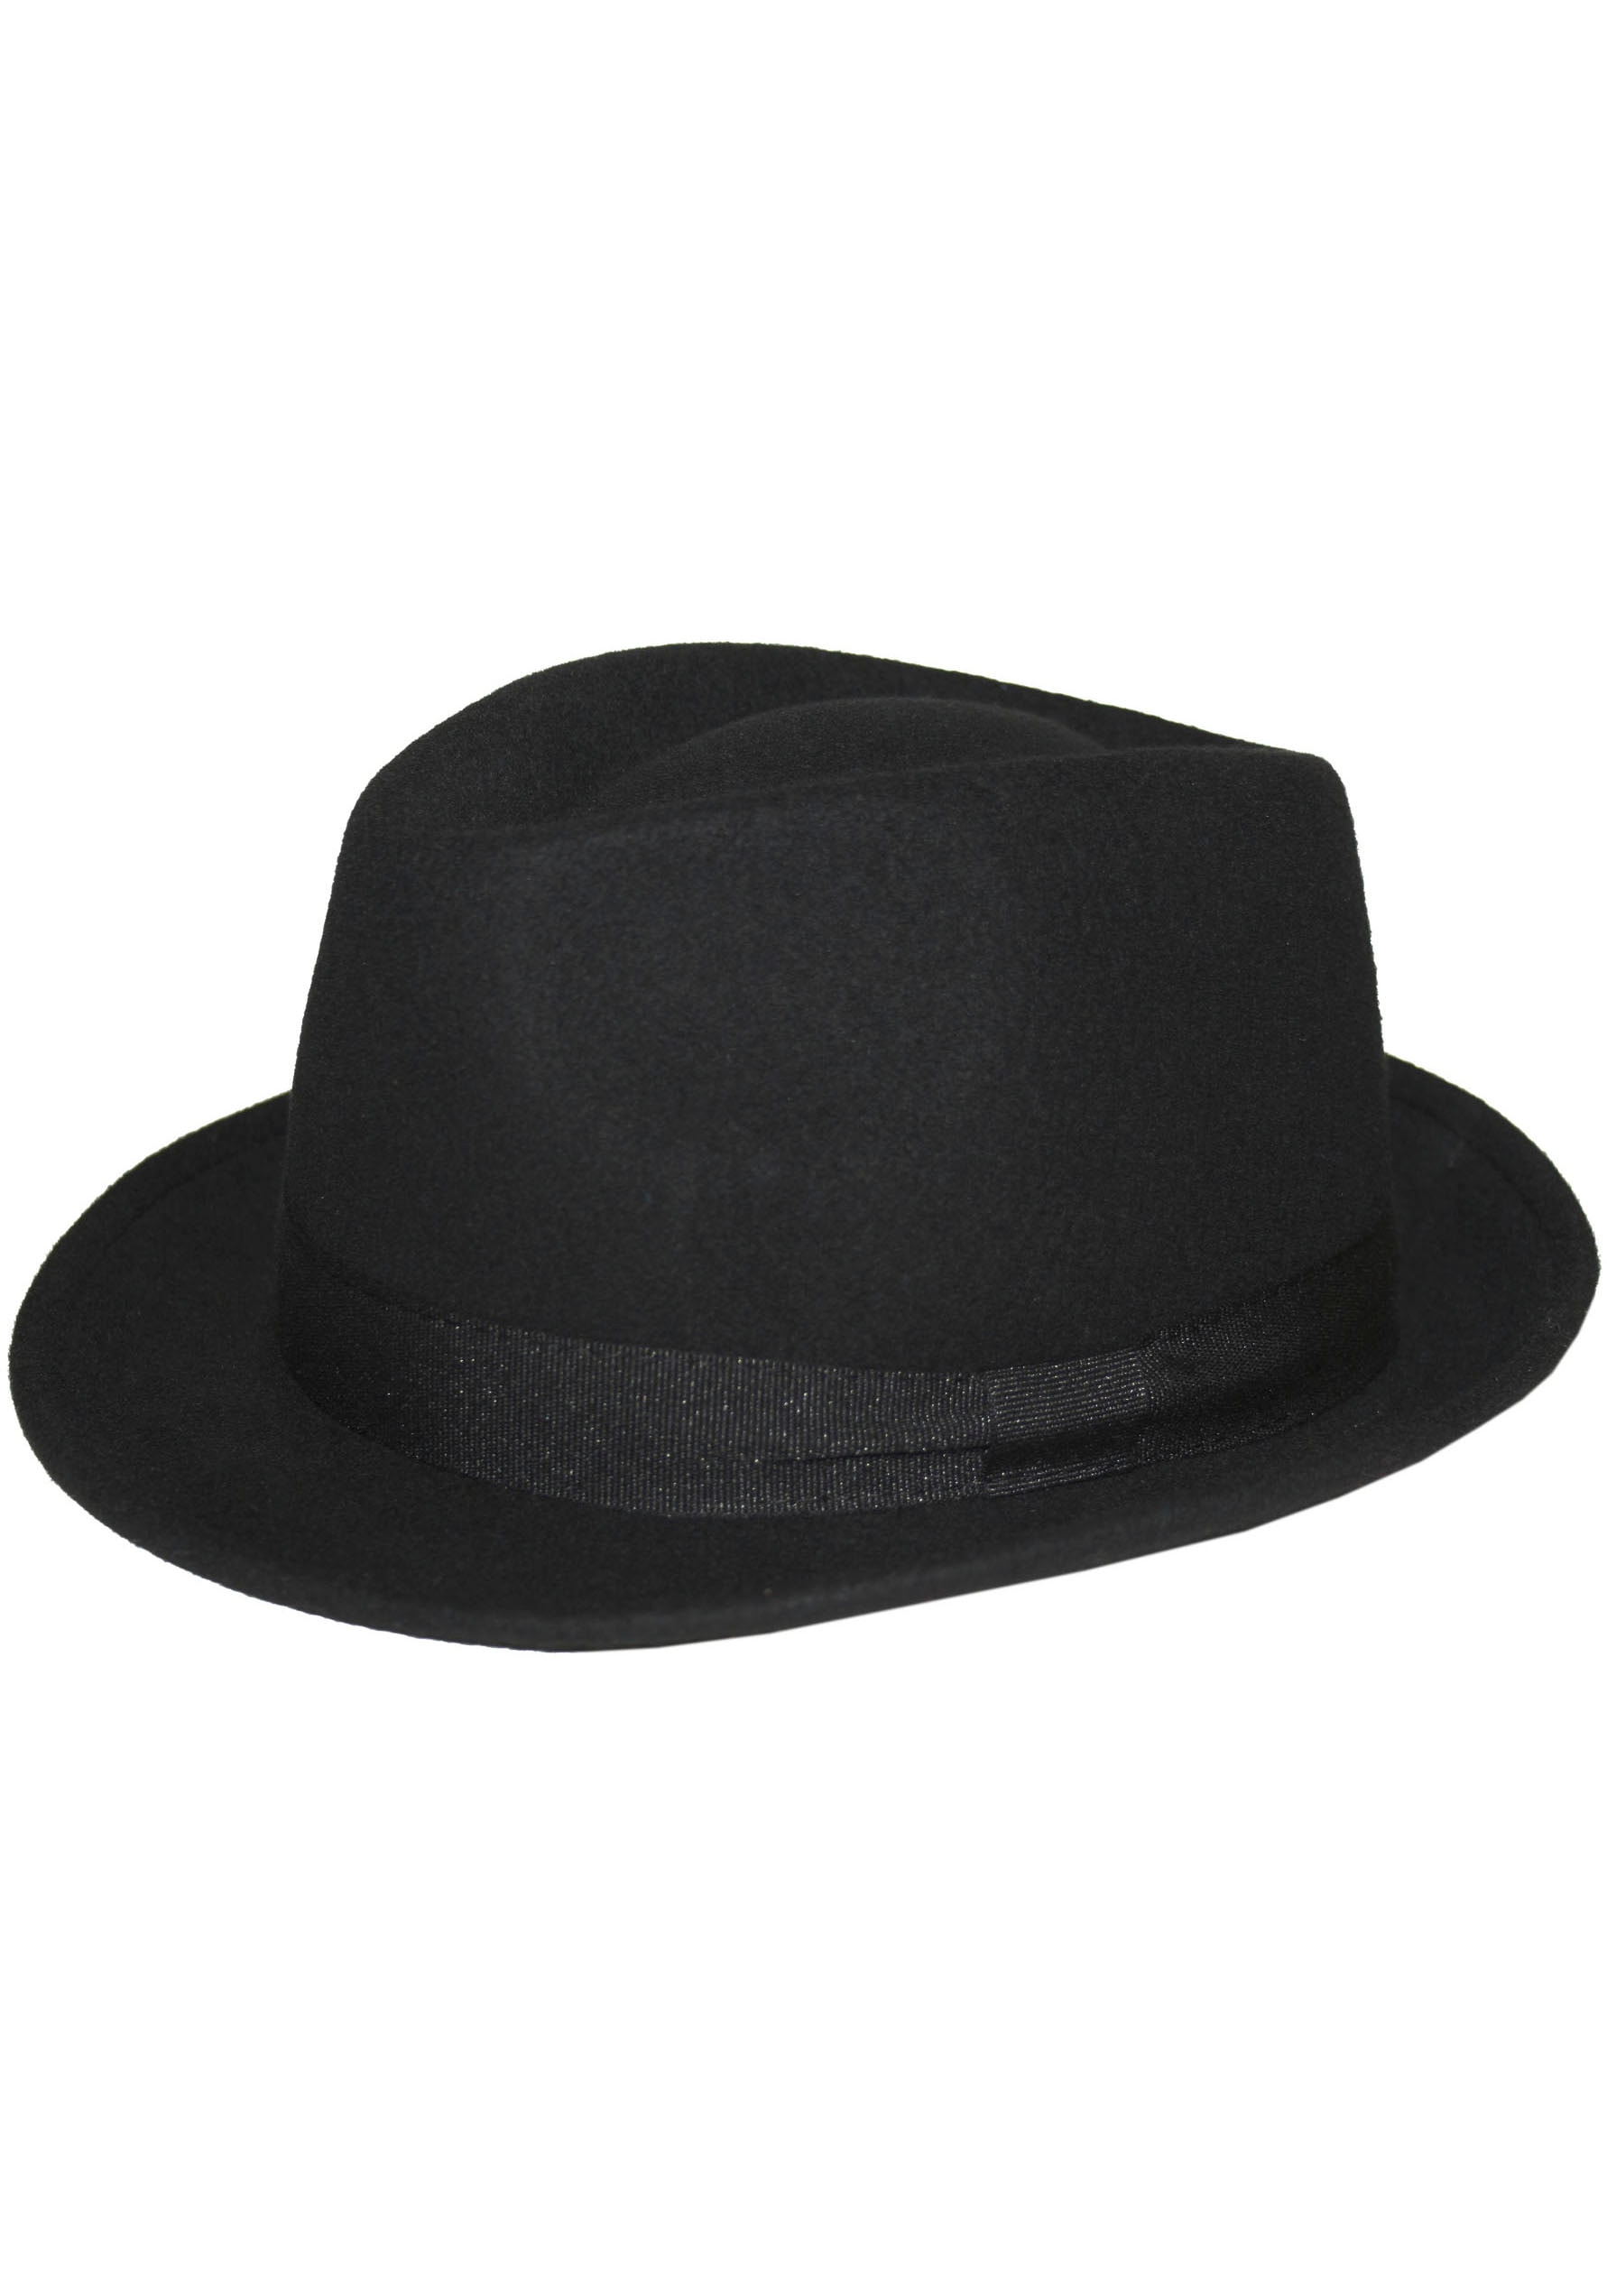 kaufen günstige - online Hüte Mode